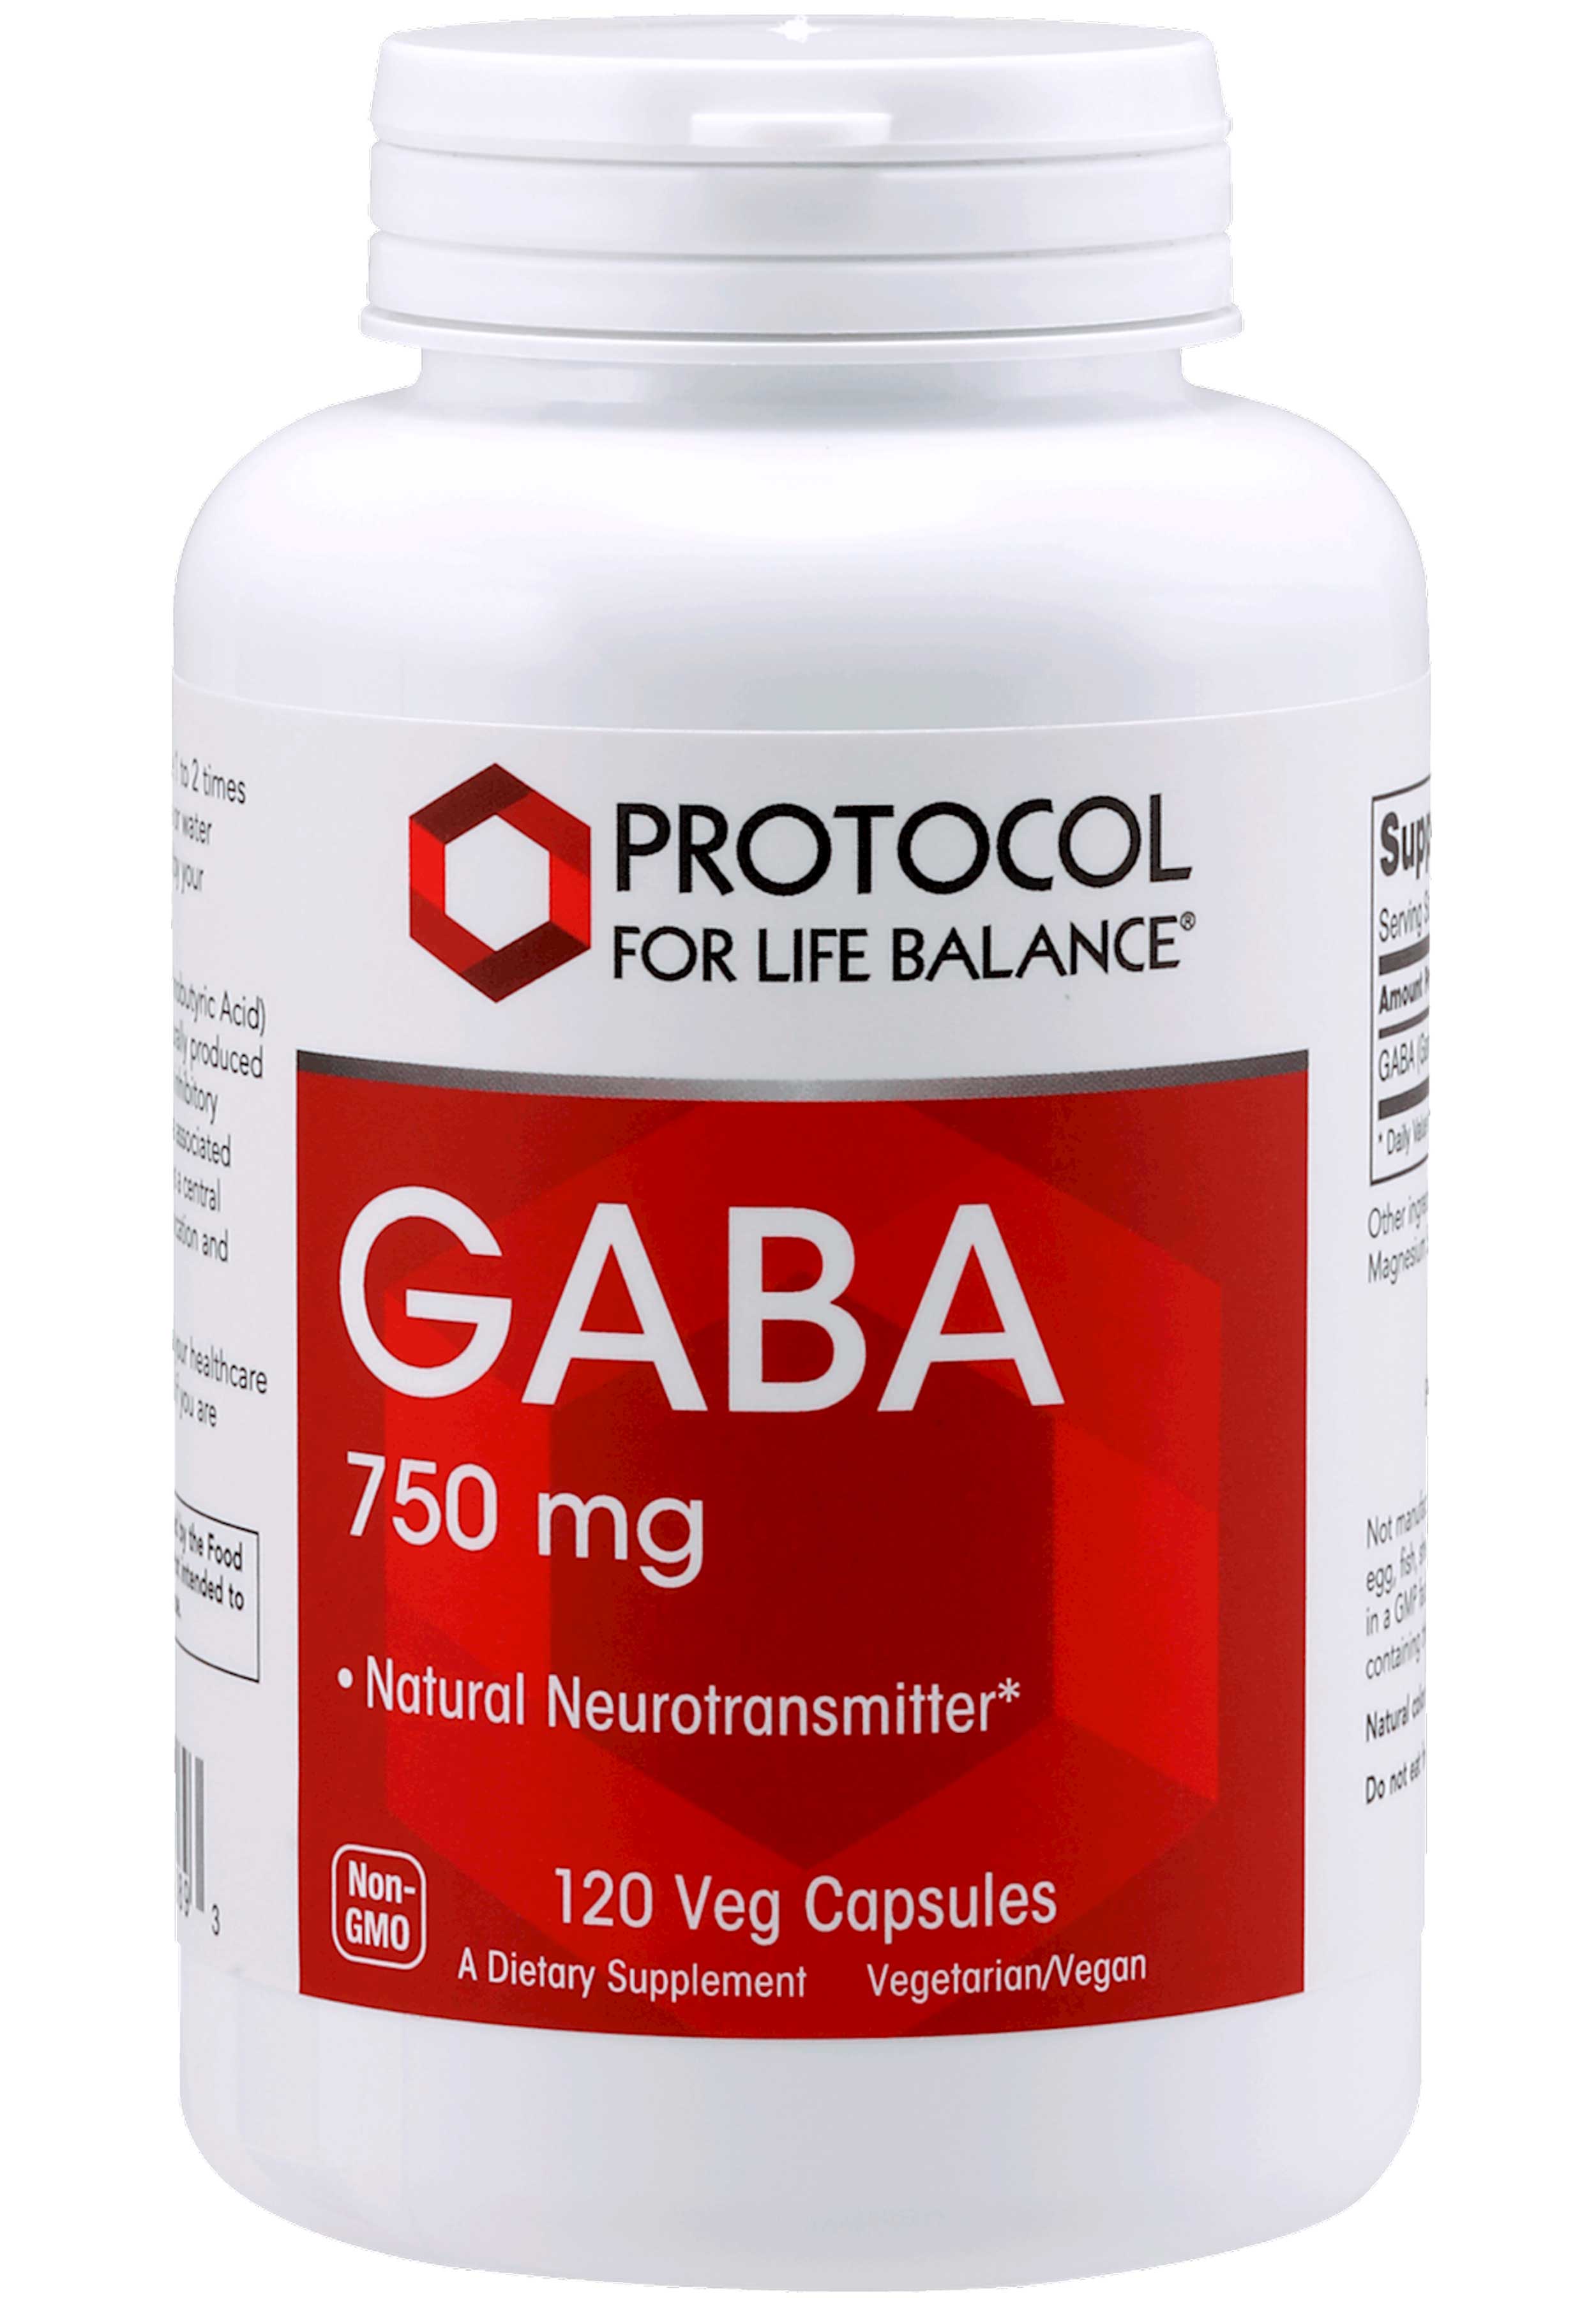 Protocol for Life Balance GABA